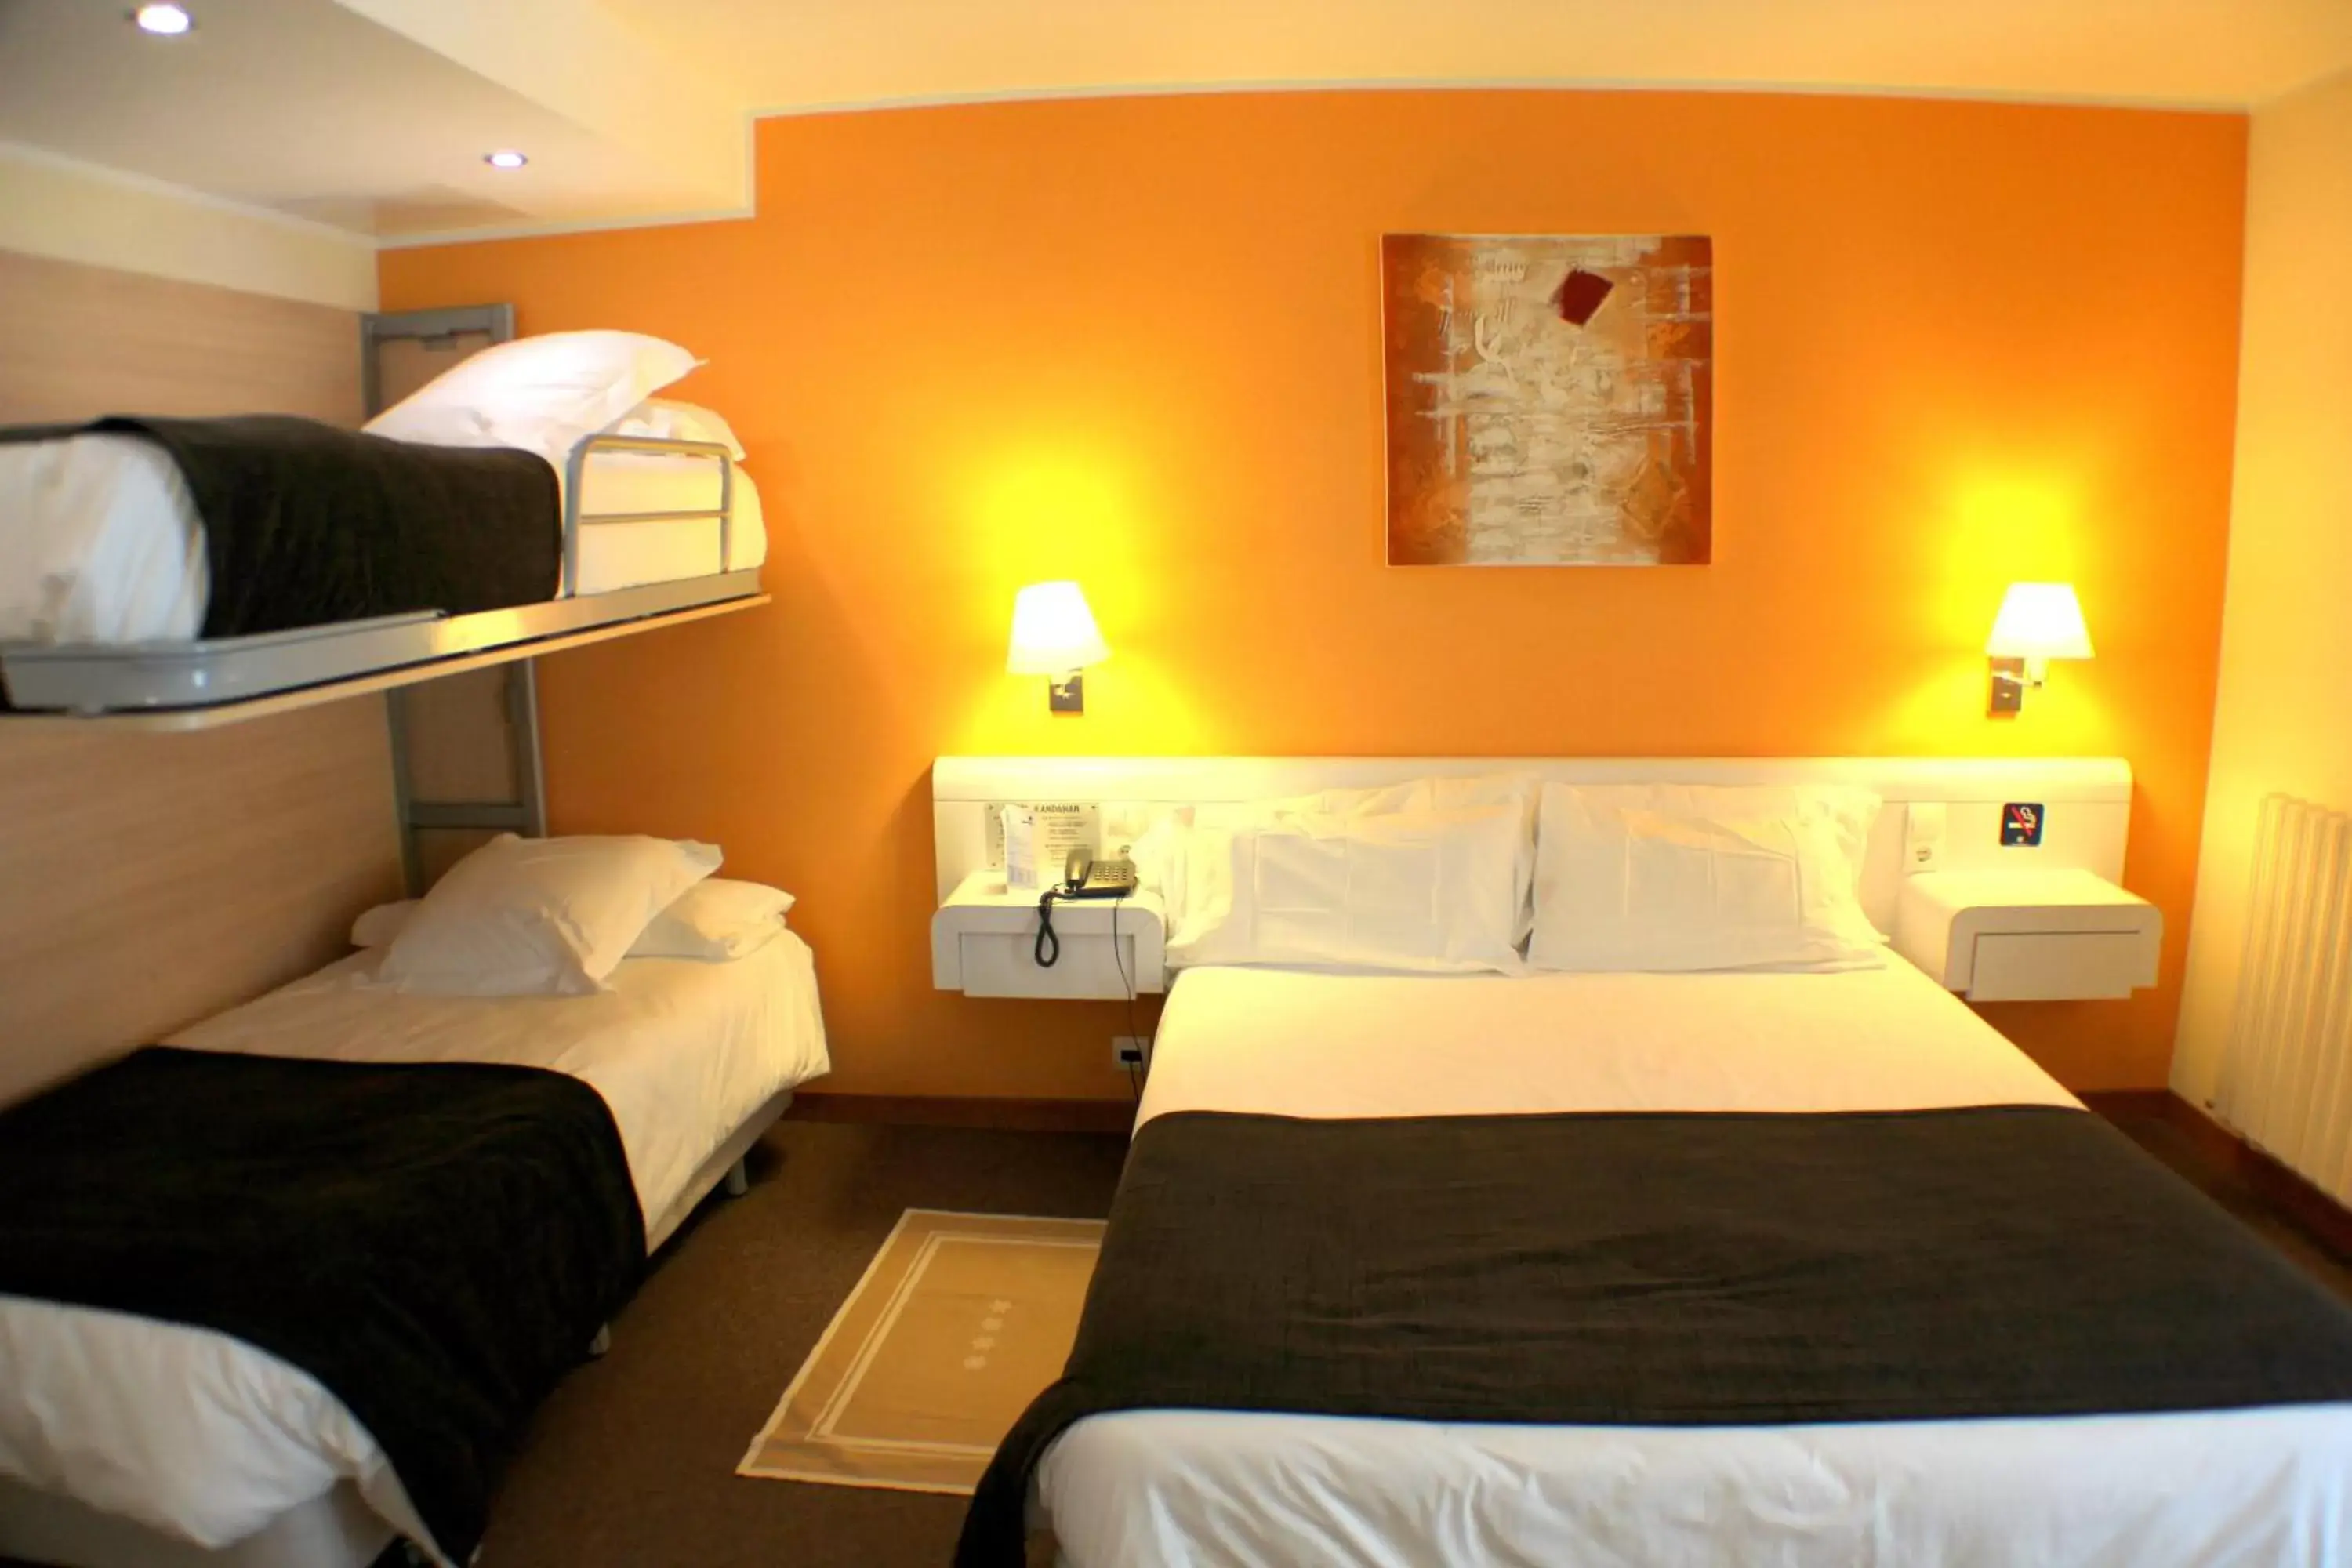 Bed, Room Photo in Hotel Kandahar